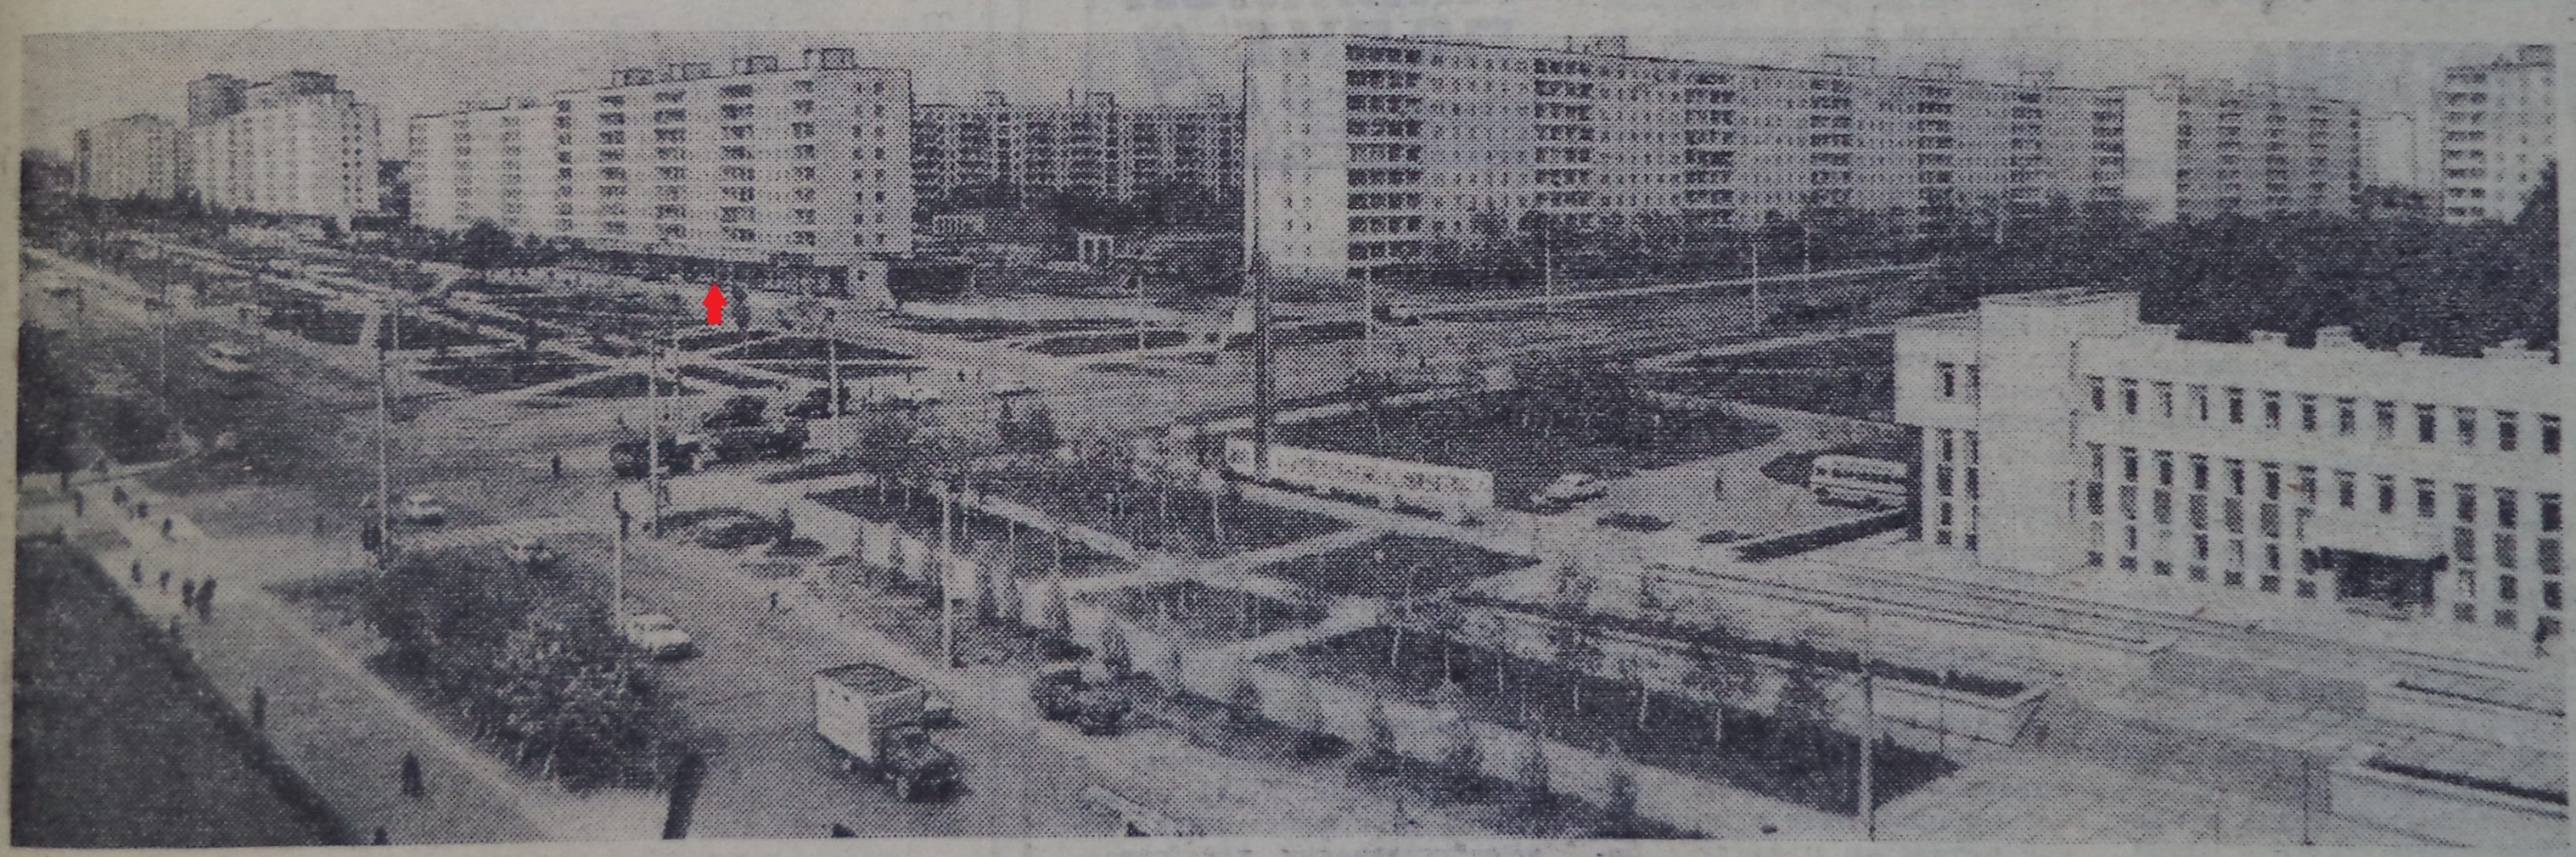 Стара Загора-ФОТО-089-Луч-1982-9 июня-2-min